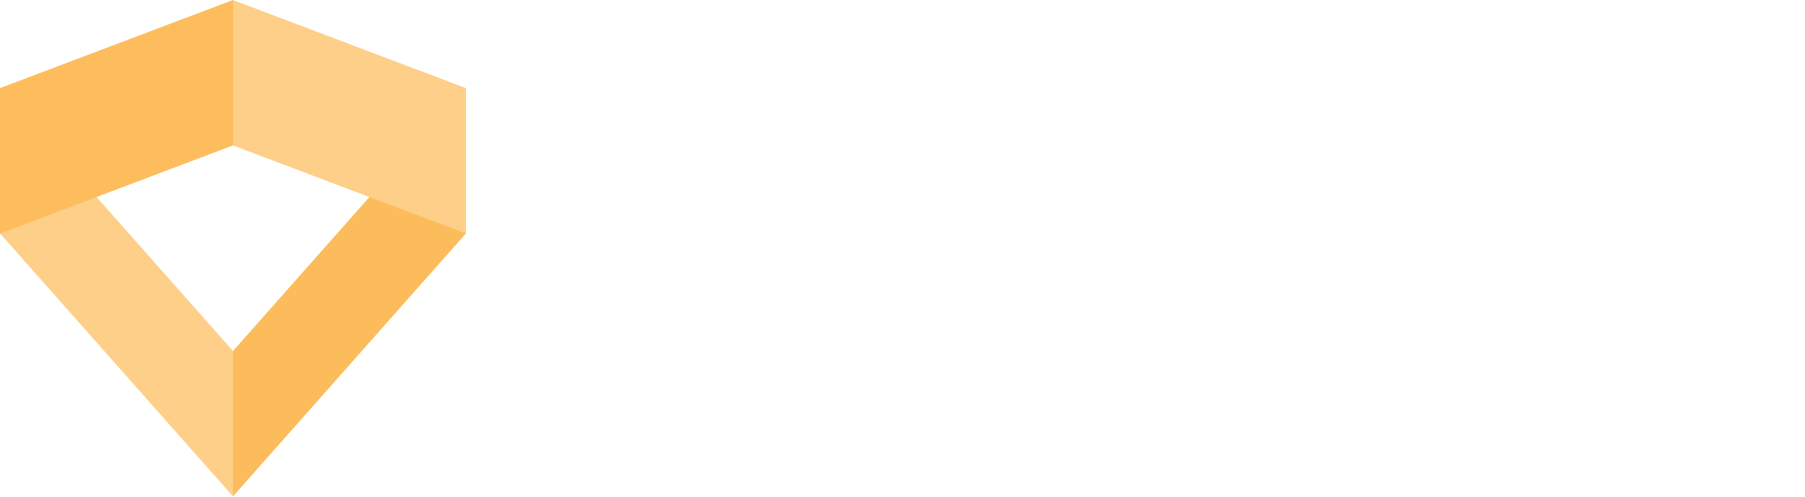 PlasmaCreative